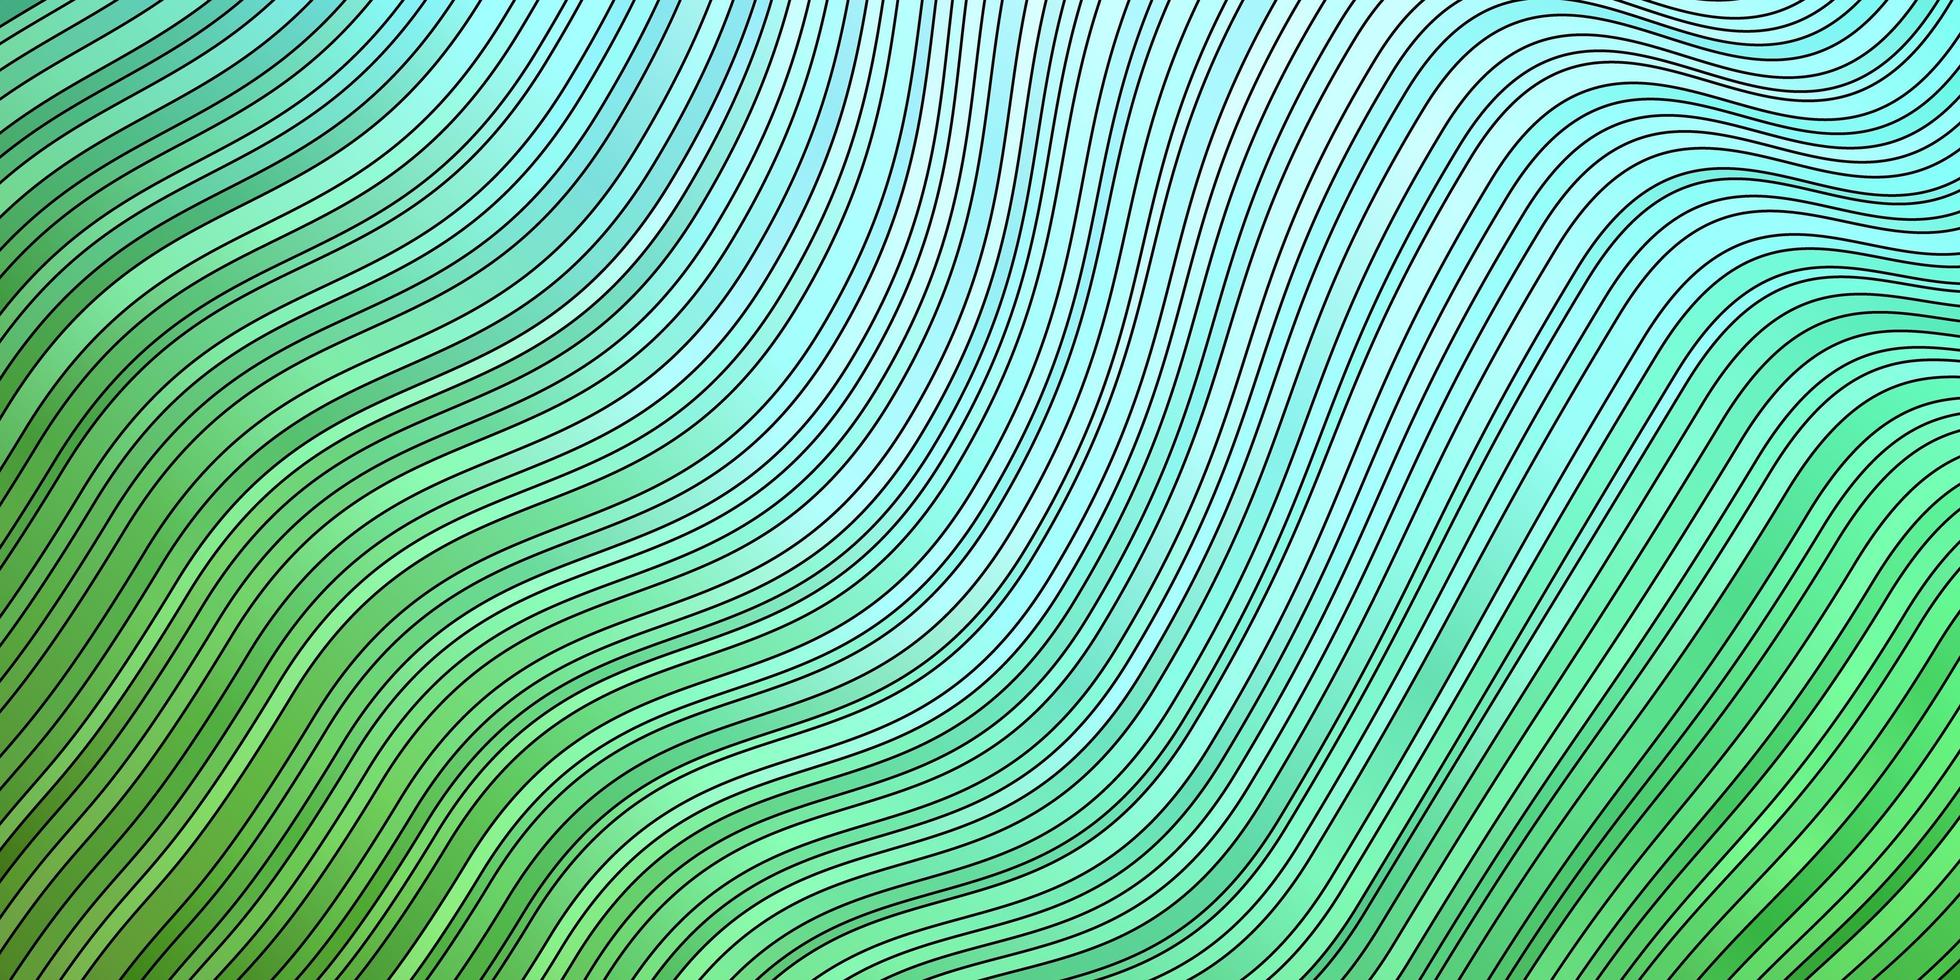 plantilla de vector azul claro, verde con líneas curvas.